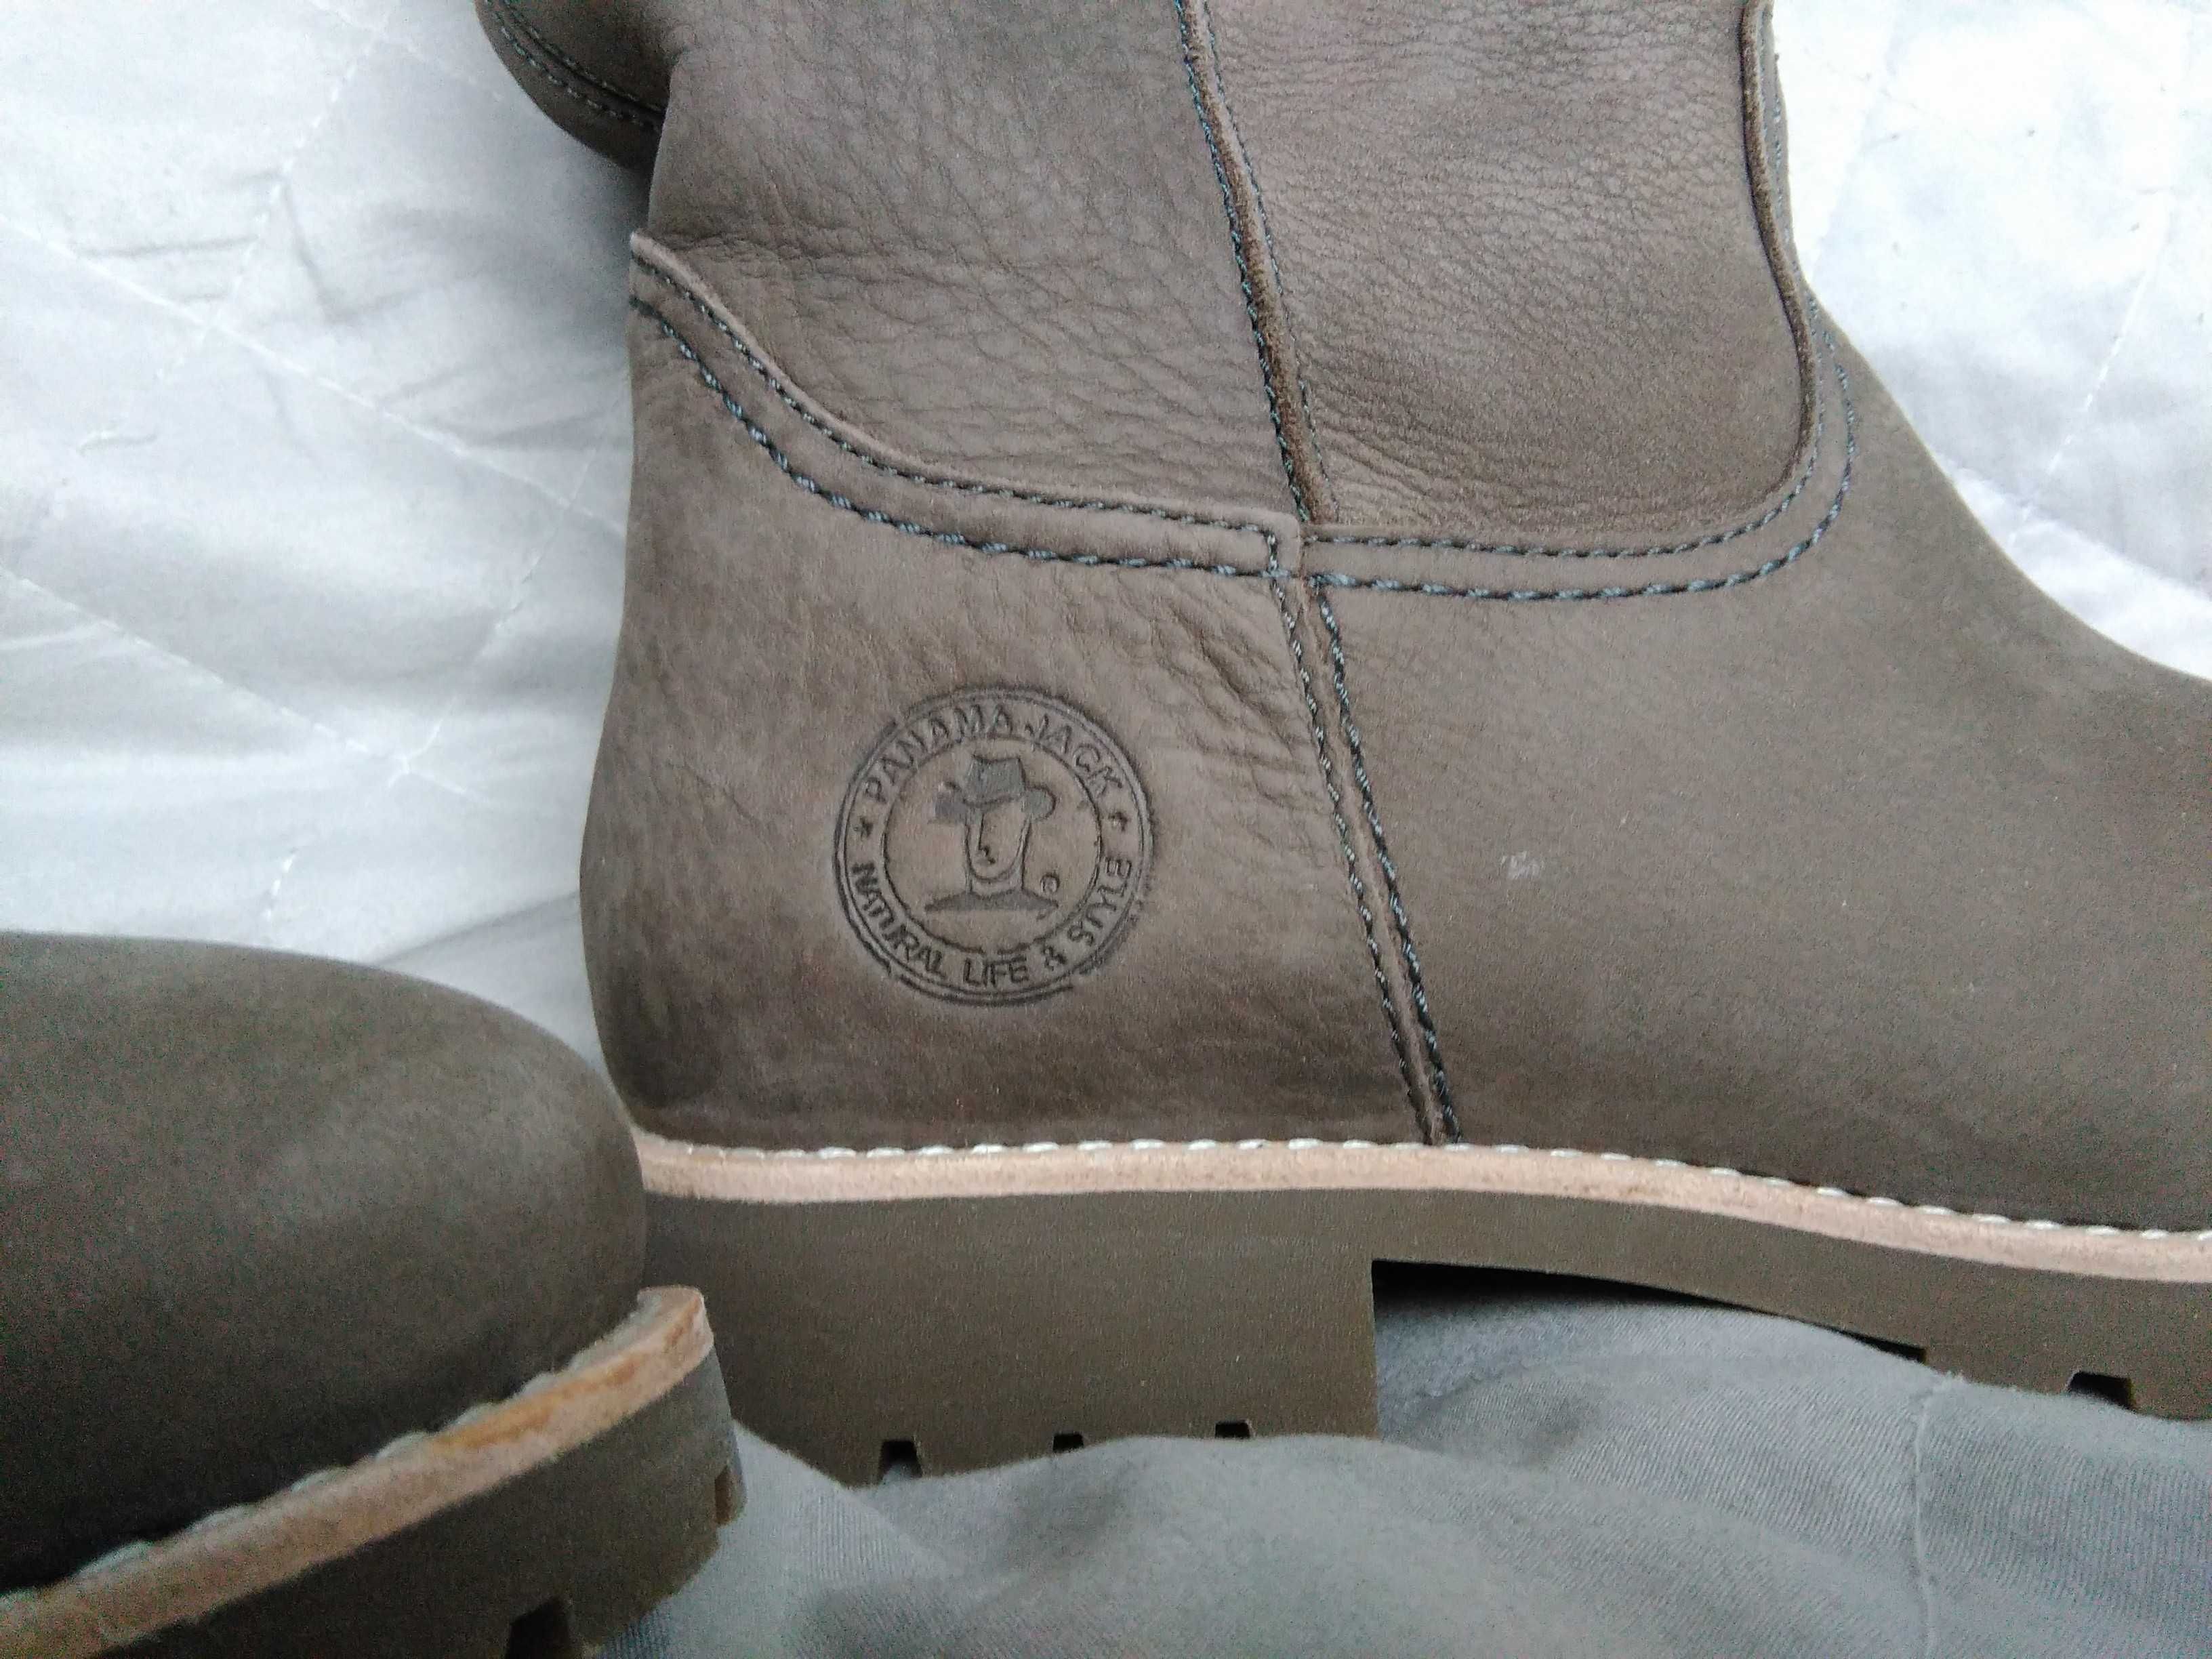 Nowe buty damskie skórzane Panama Jack Bambina Igloo r. 39 25cm kozaki